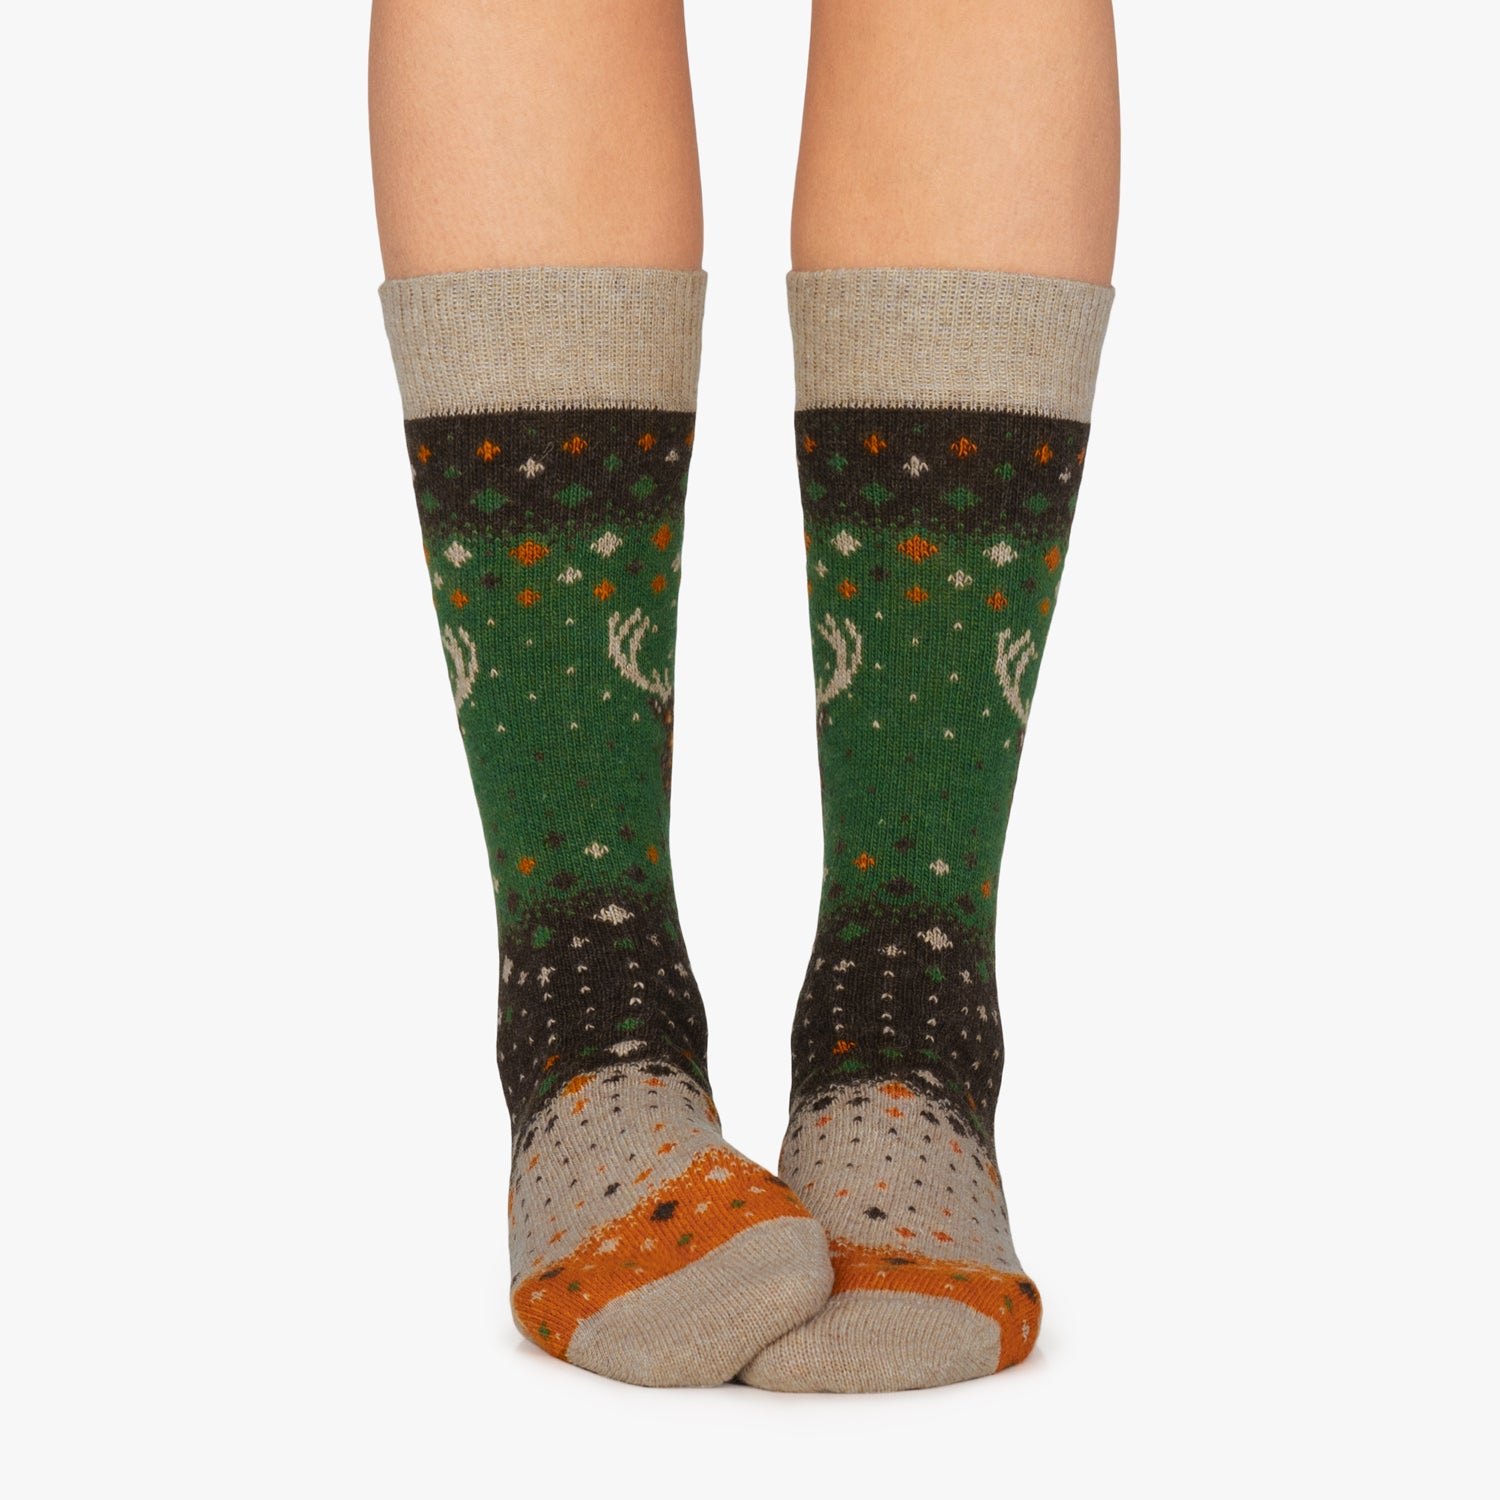 Winter Deer Socks for Men and Women